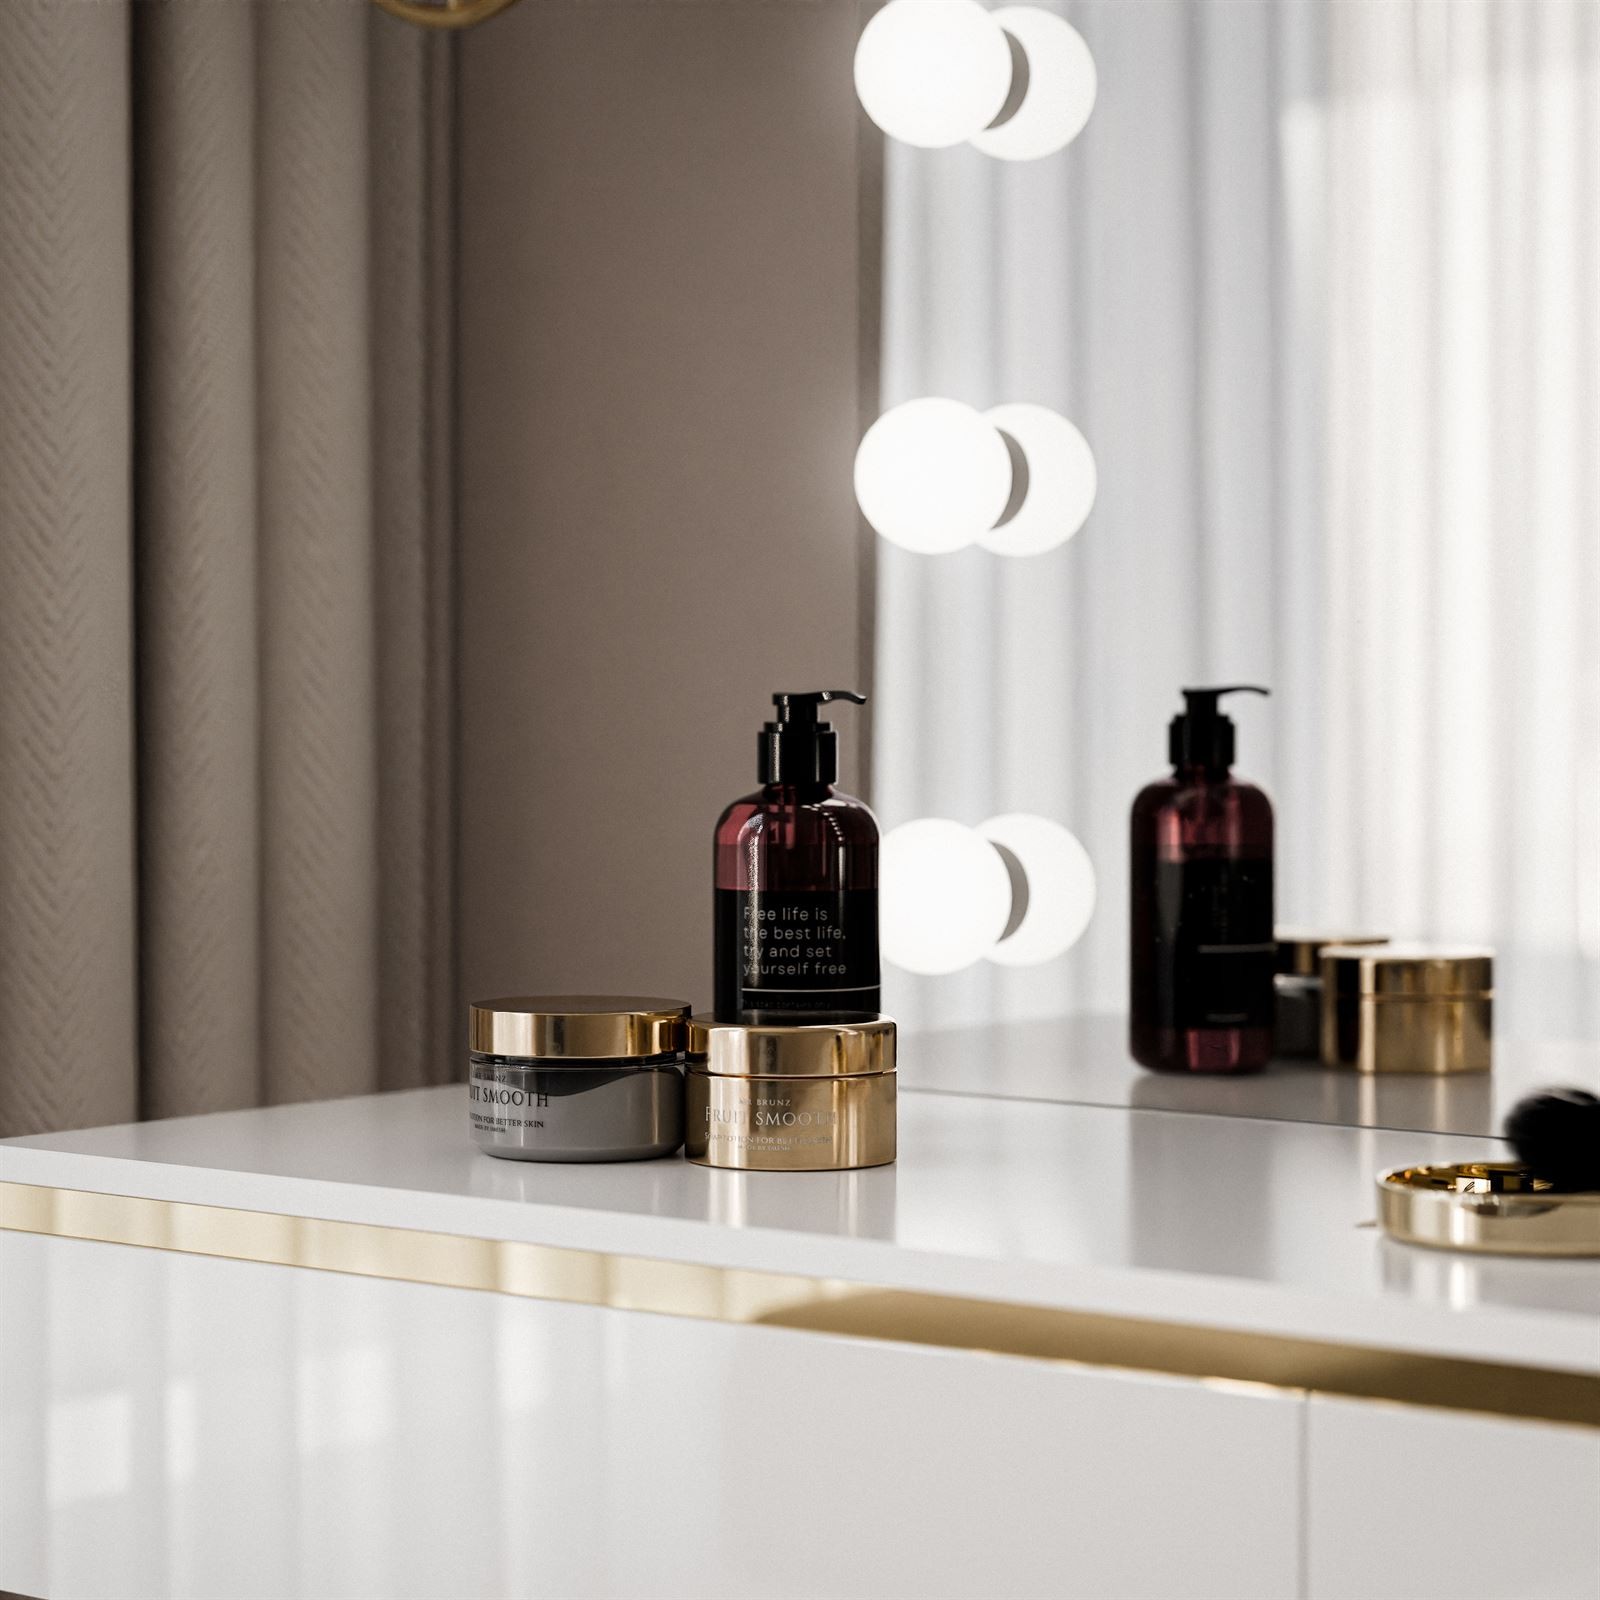 Toaletka kosmetyczna AURORA GOLD ELITE z lustrem biały połysk